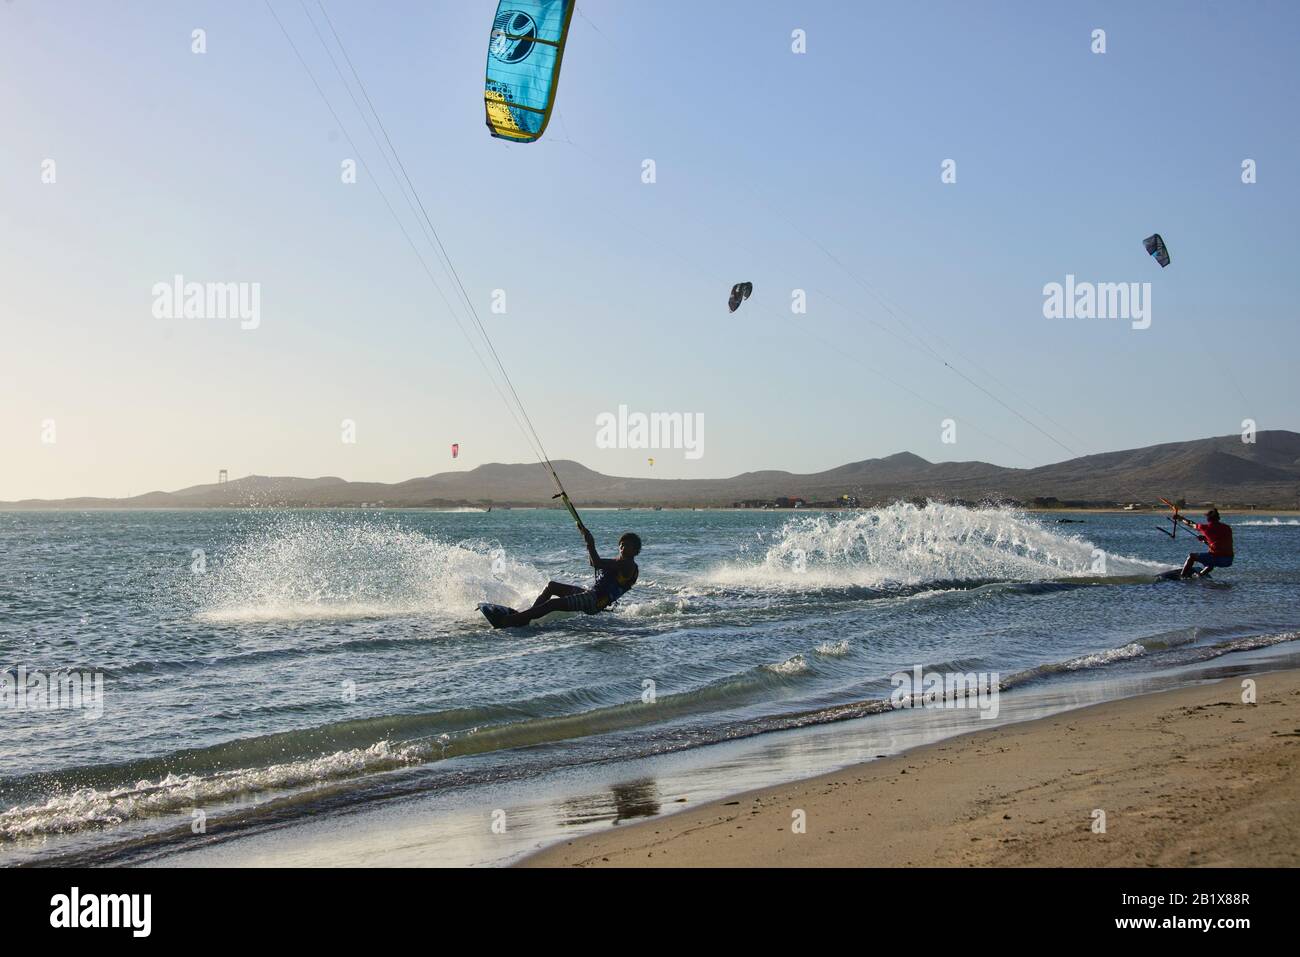 Kitesurfing in Cabo de la Vela, Guajira, Colombia Stock Photo - Alamy